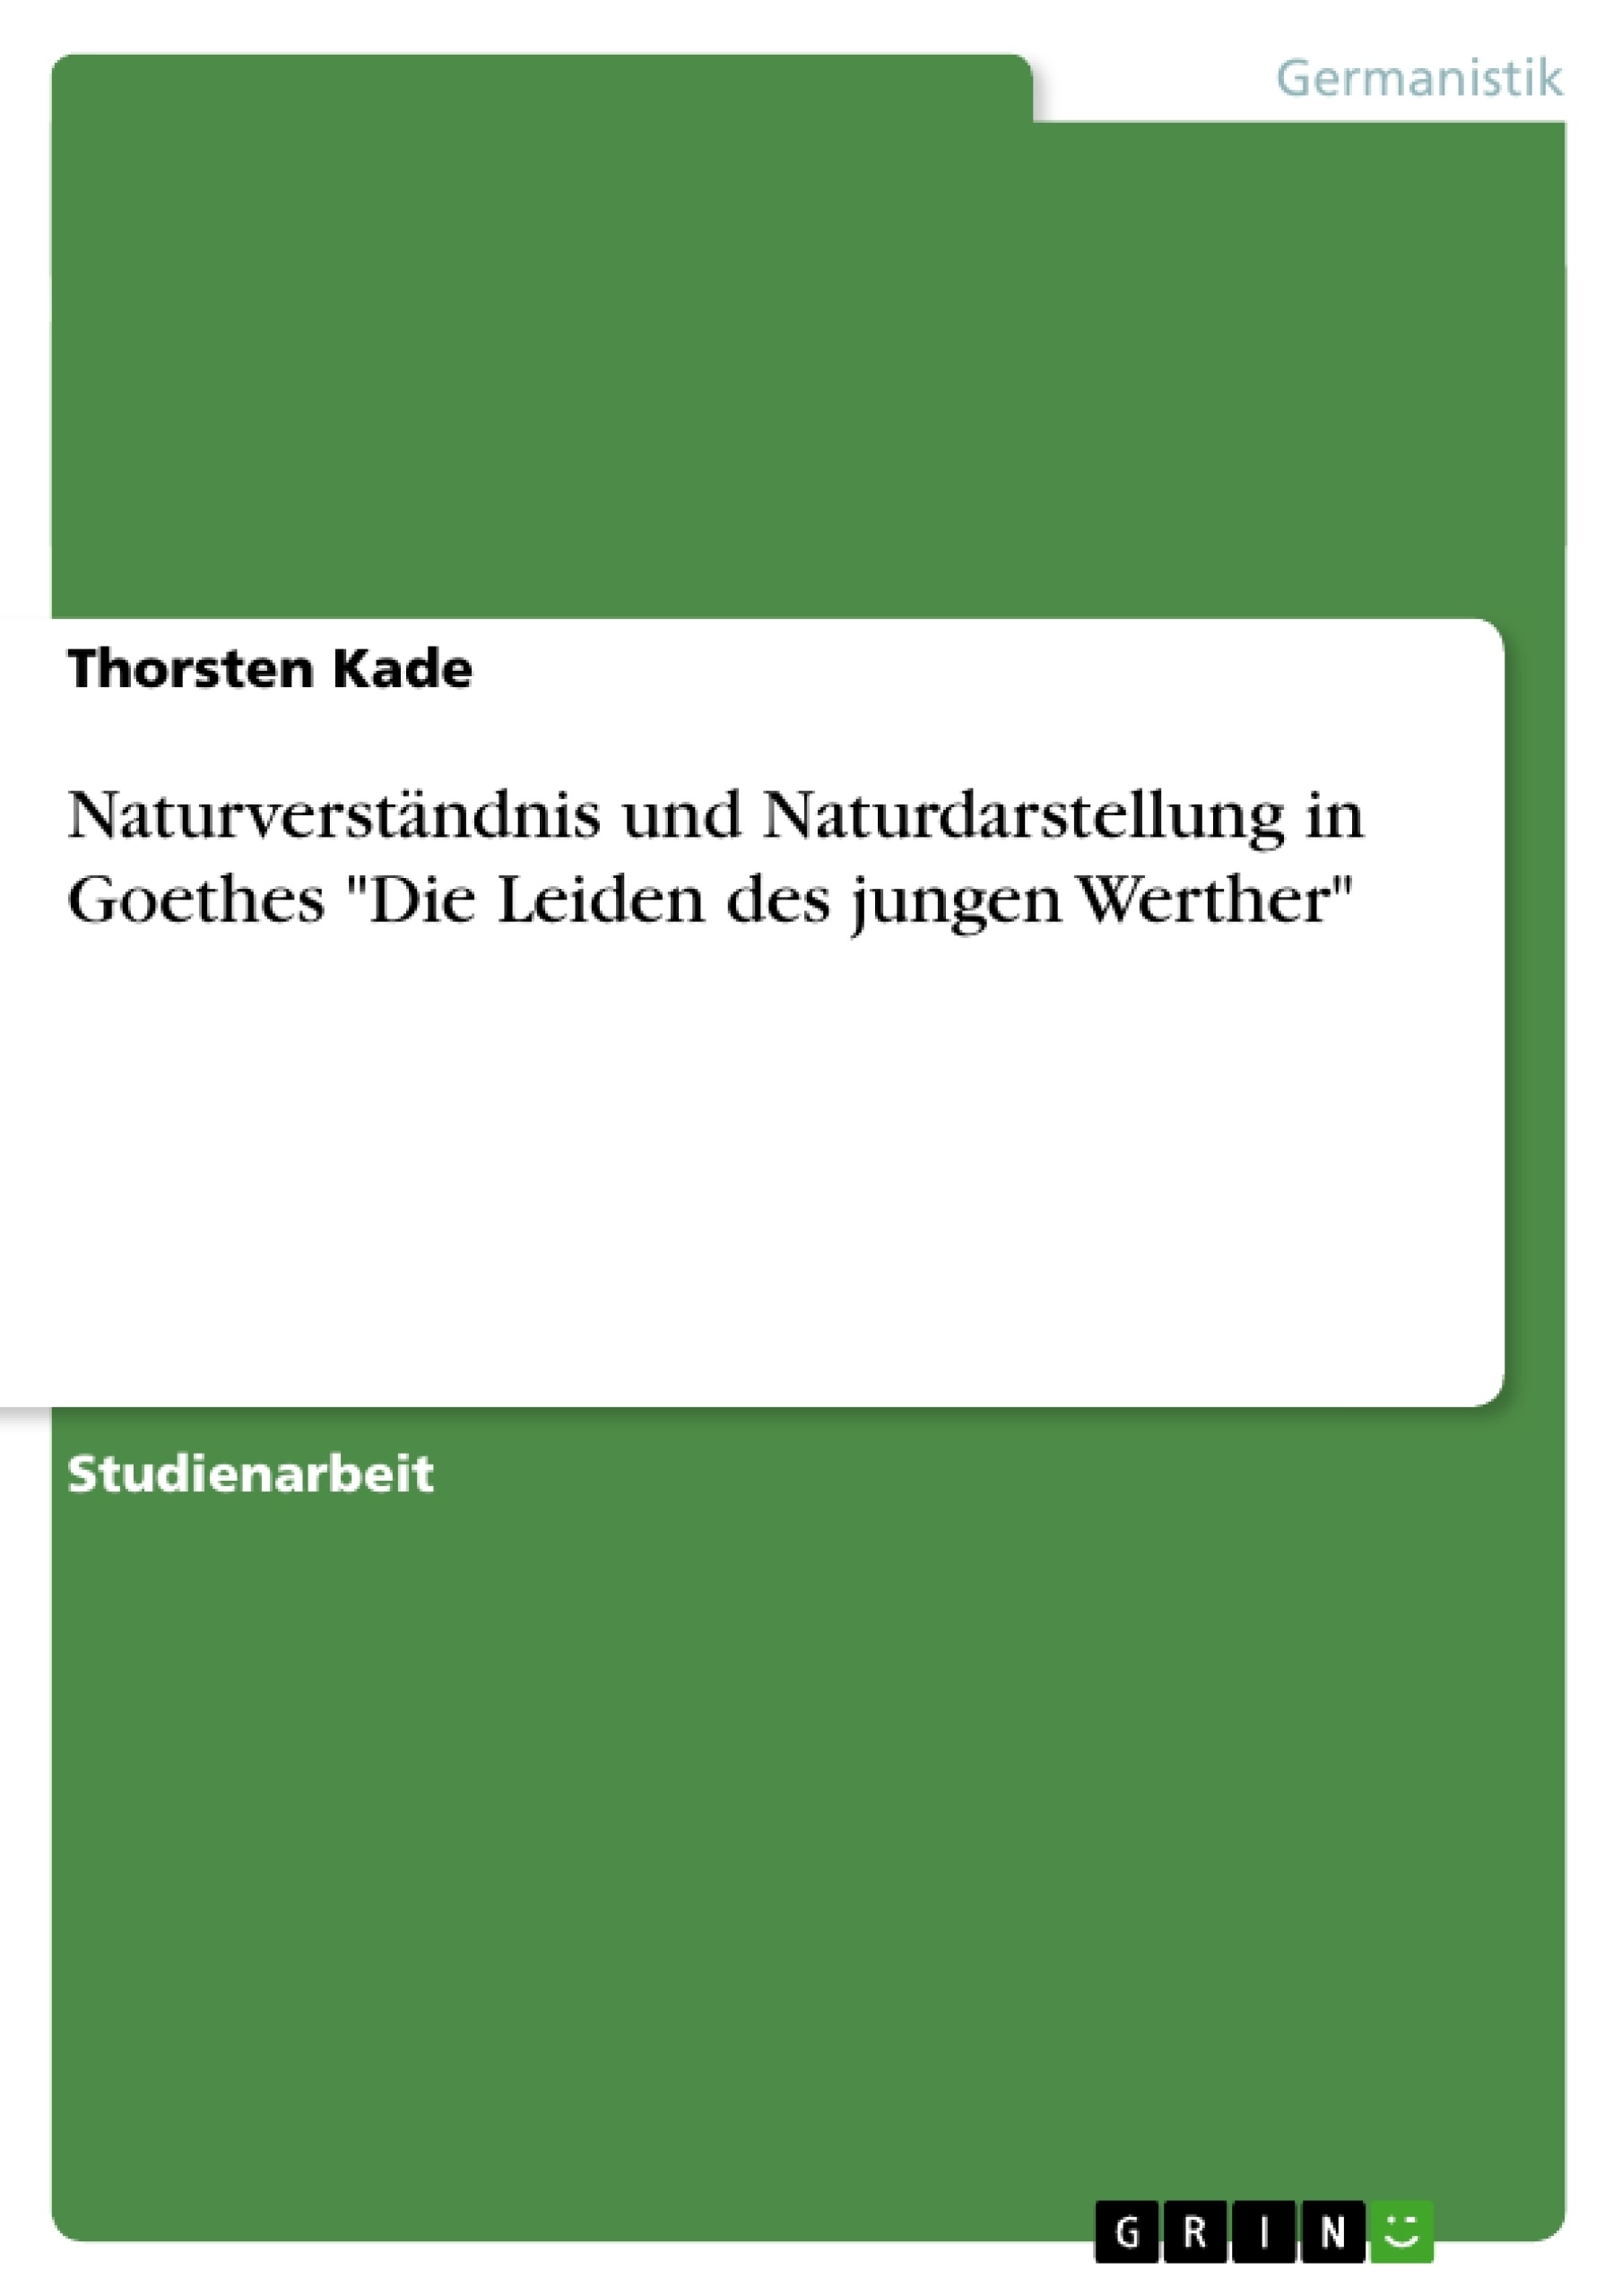 Titre: Naturverständnis und Naturdarstellung in Goethes "Die Leiden des jungen Werther" 